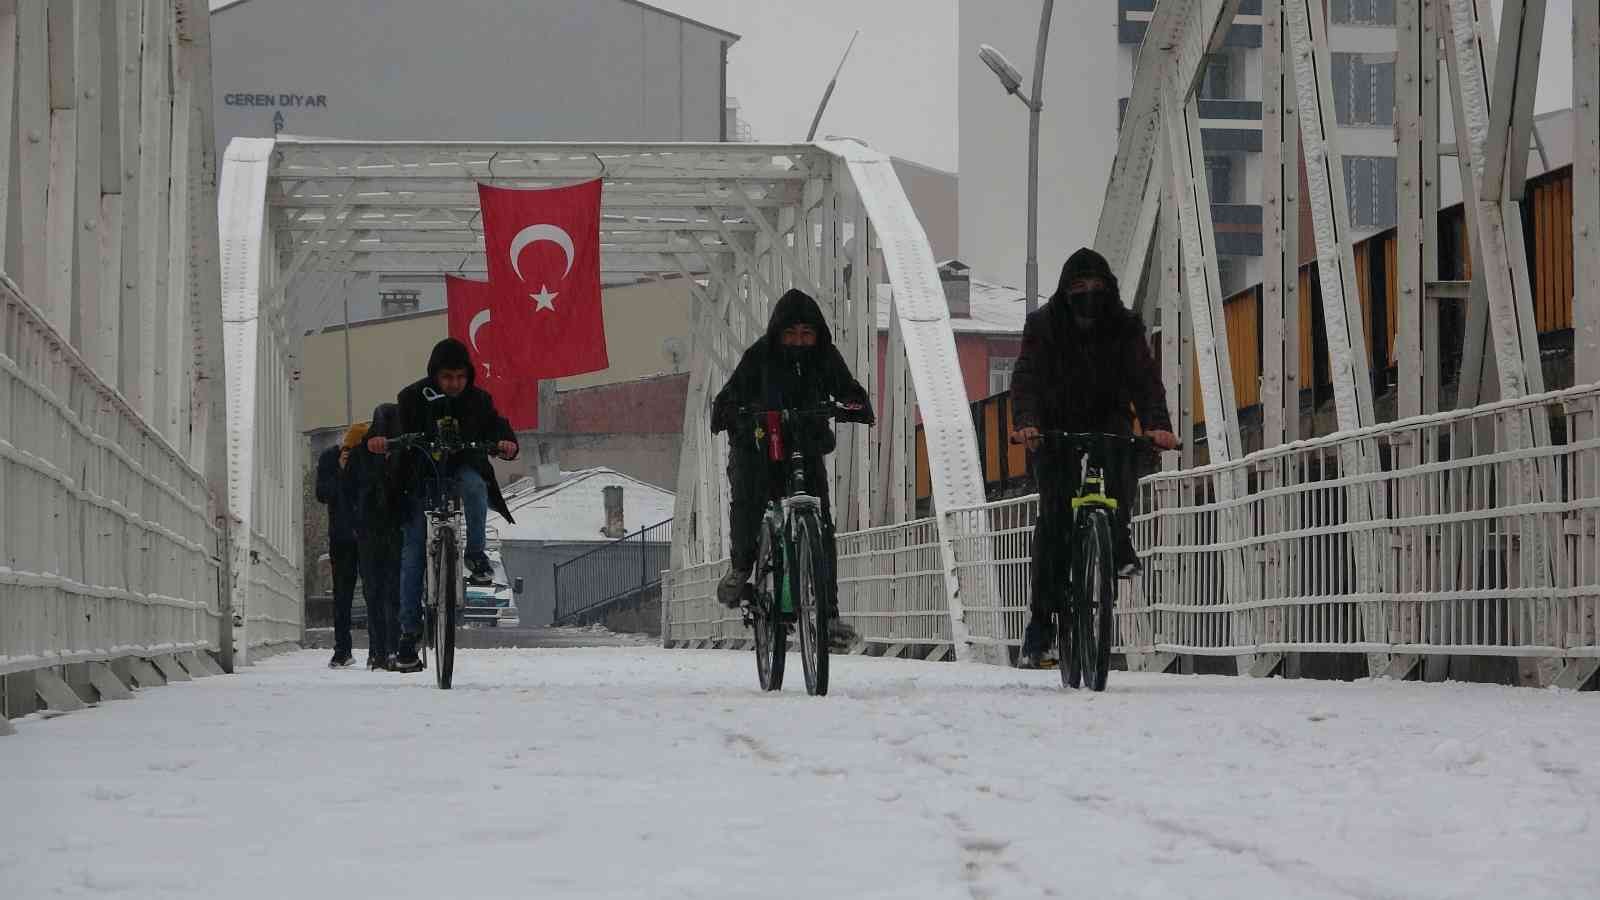 29 Ekim’de Ardahan’da kar sürprizi #ardahan